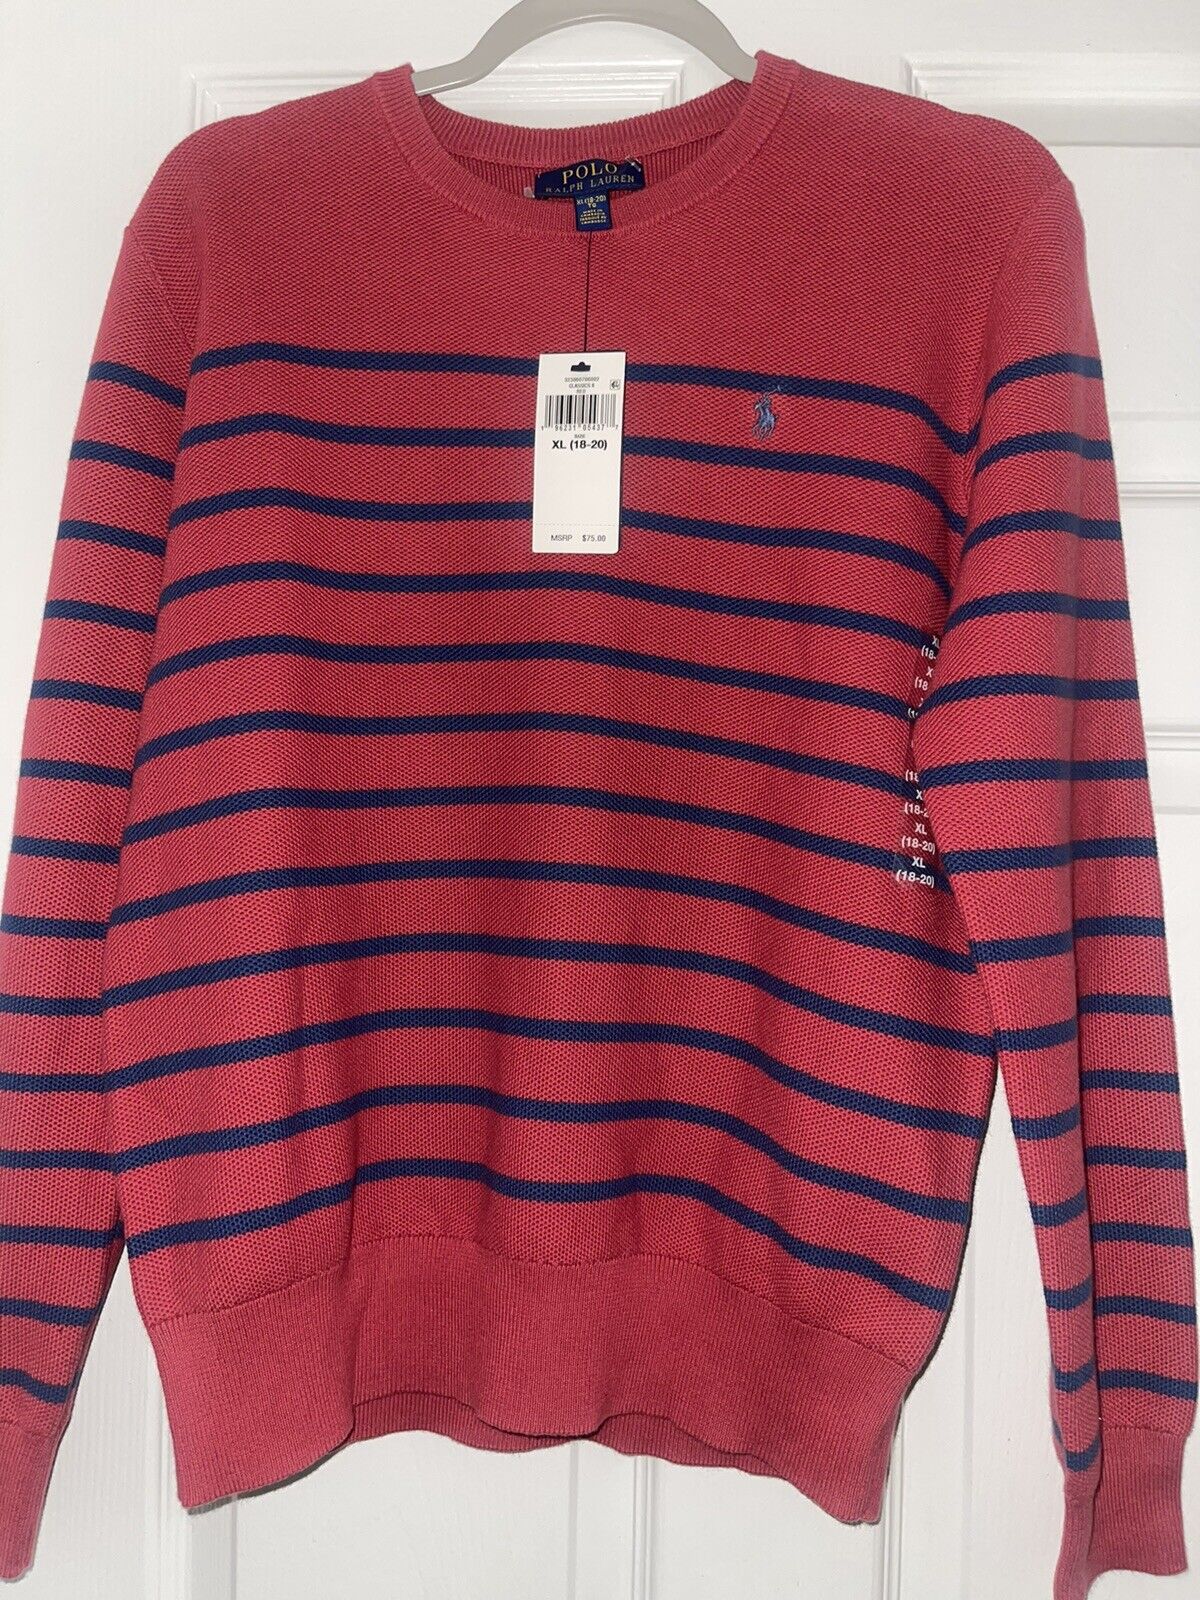 boys polo ralph lauren xl 18-20 sweater Red W/small Blue Rings Ralph Lauren